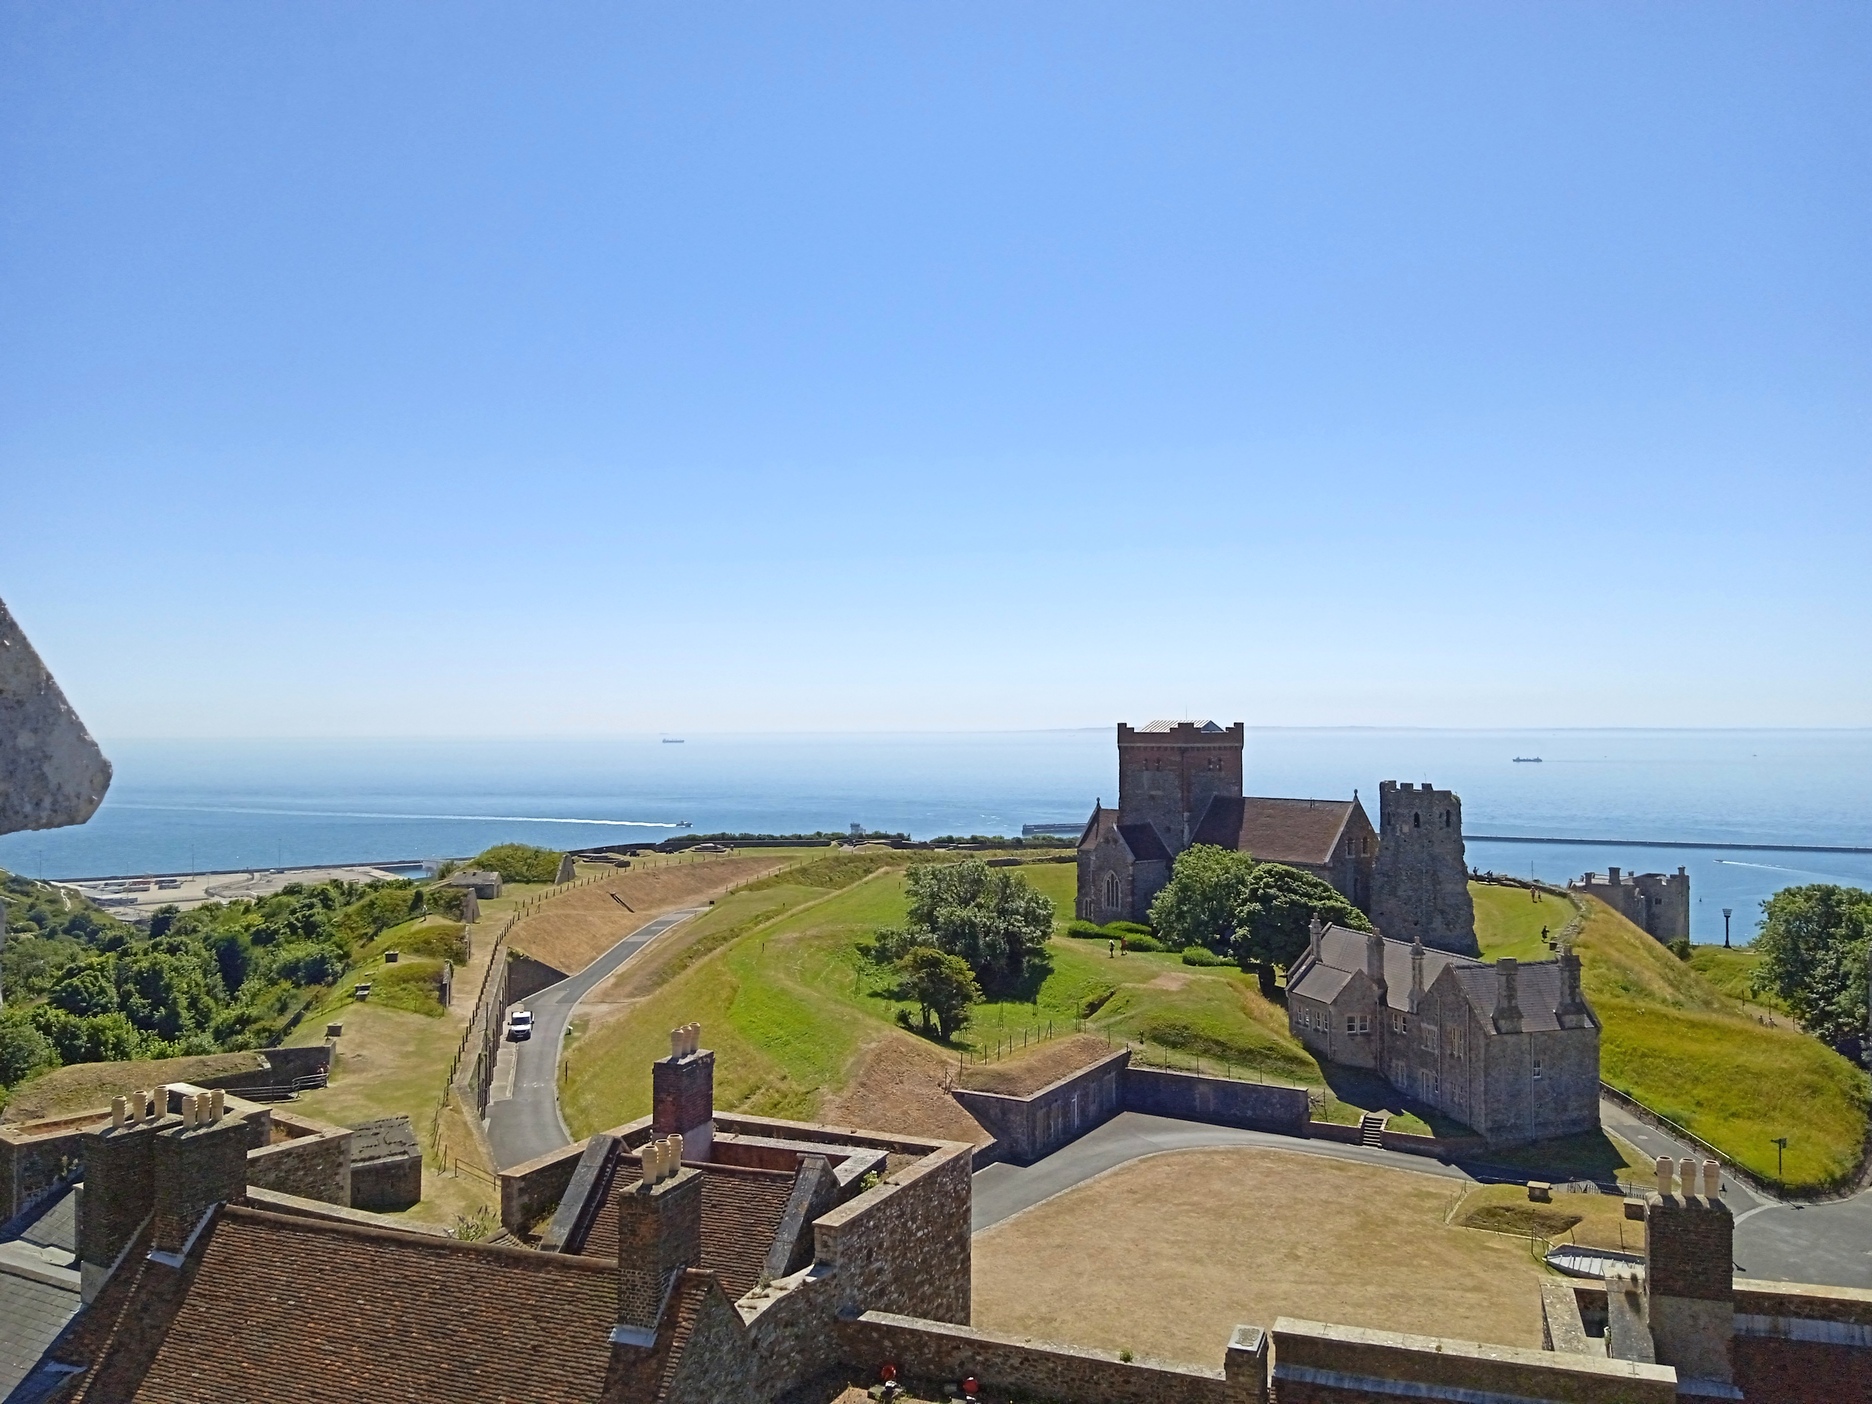 Kilátás a toronytetőről a külső várra, és a tengerre. A túloldali part a párás időben is jól kivehető.